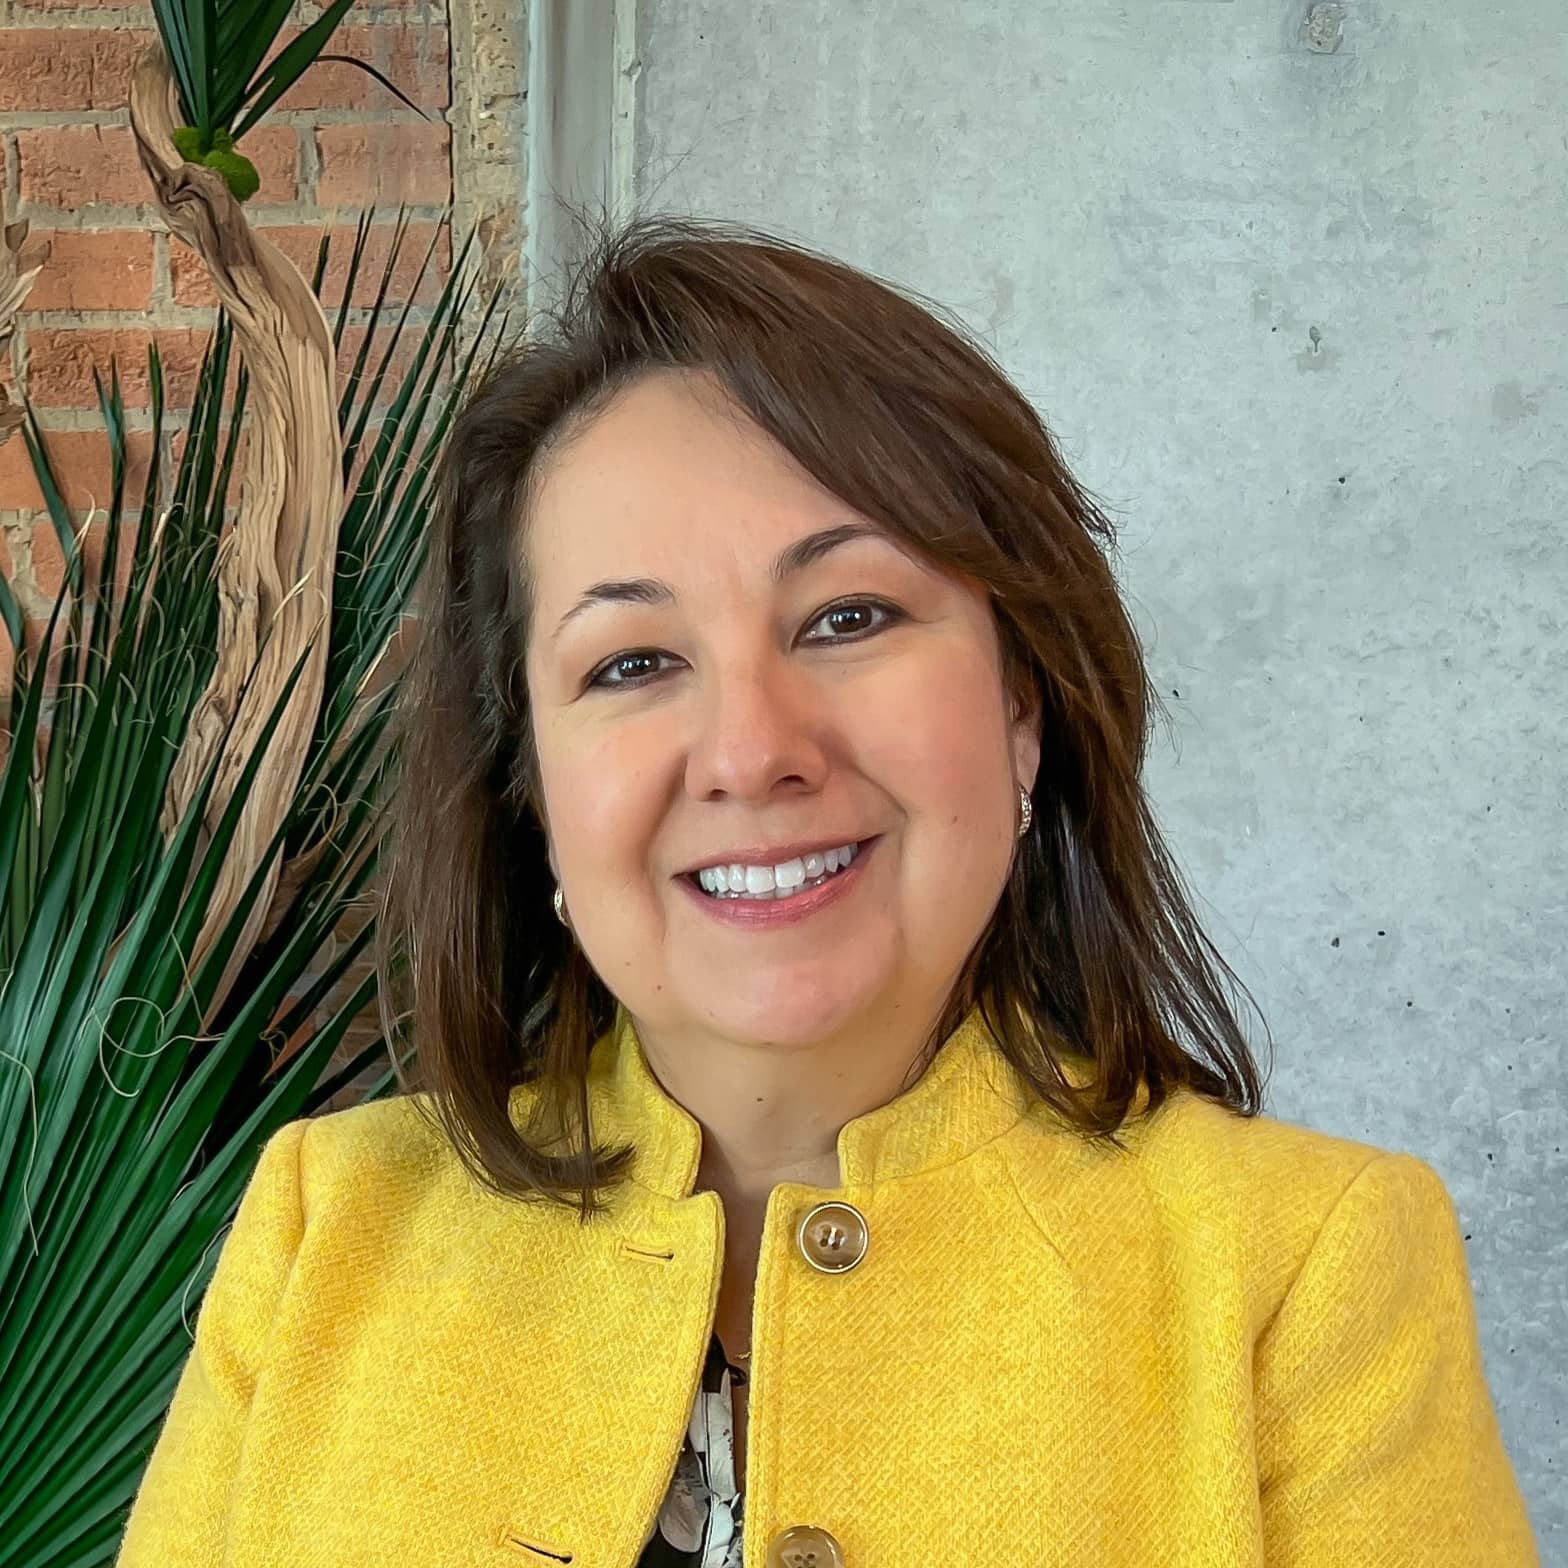 Rachel C. Ybarra